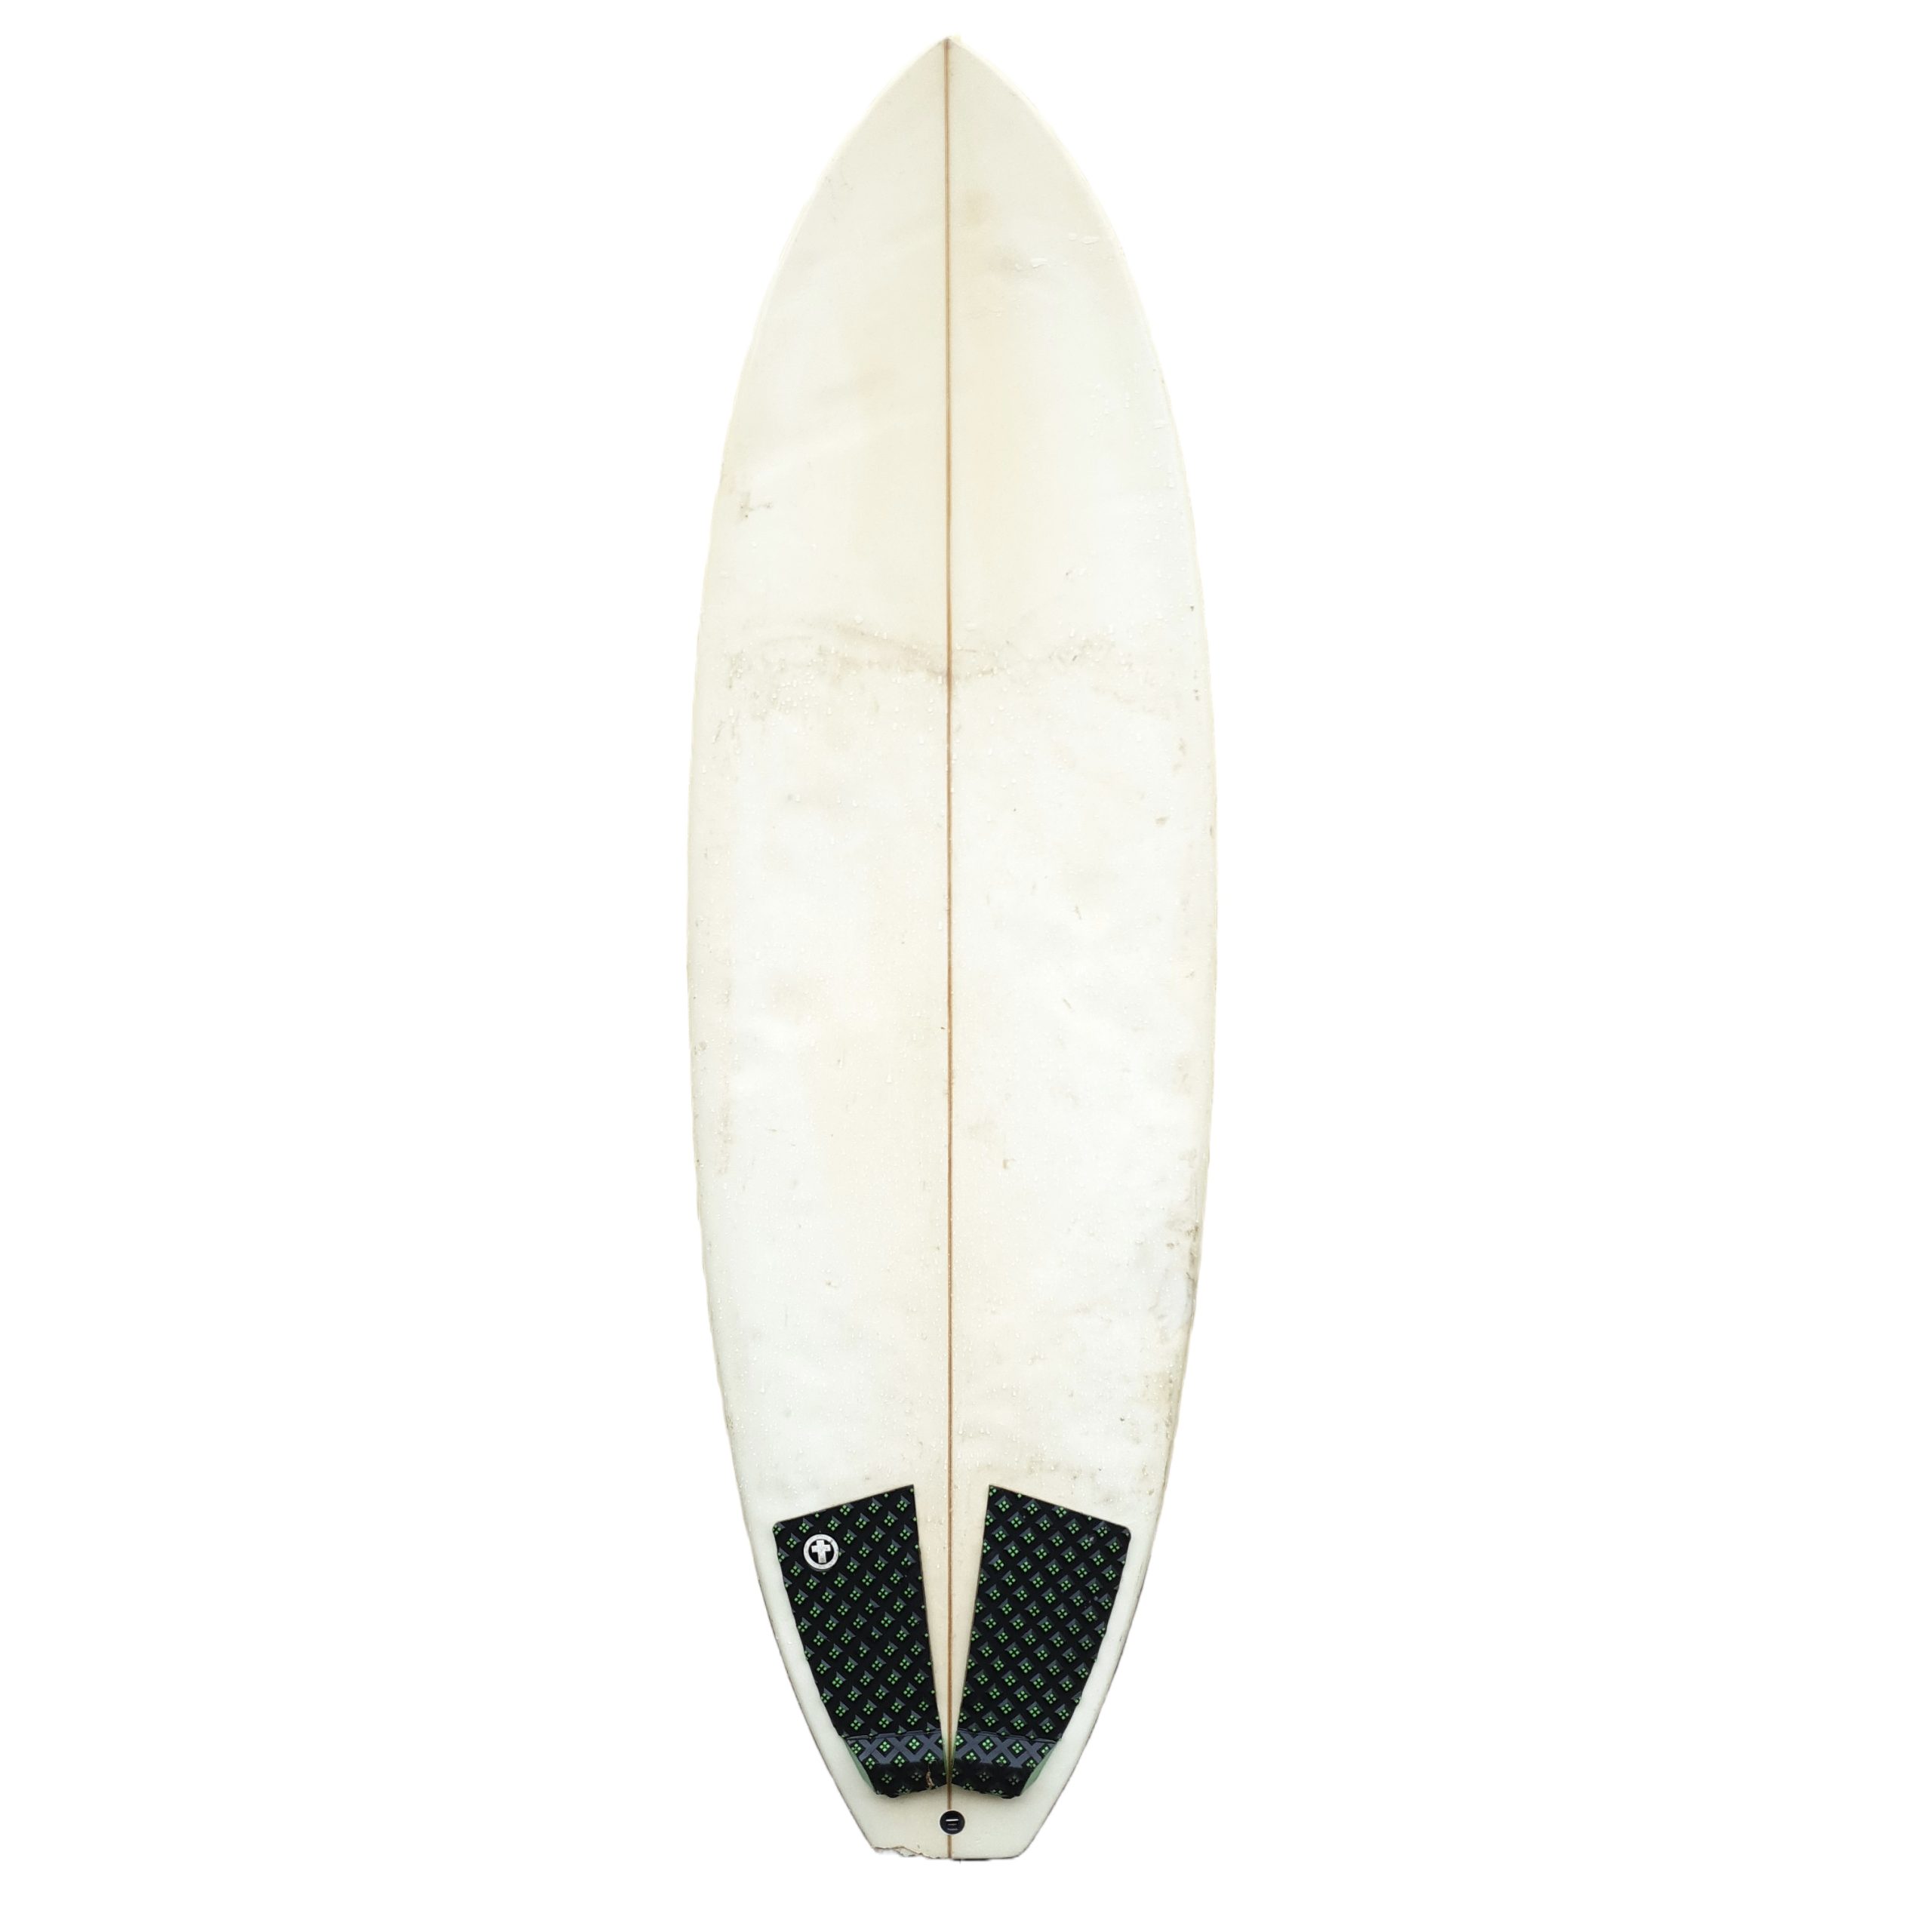 Earthworm Fibreglass Surfboard